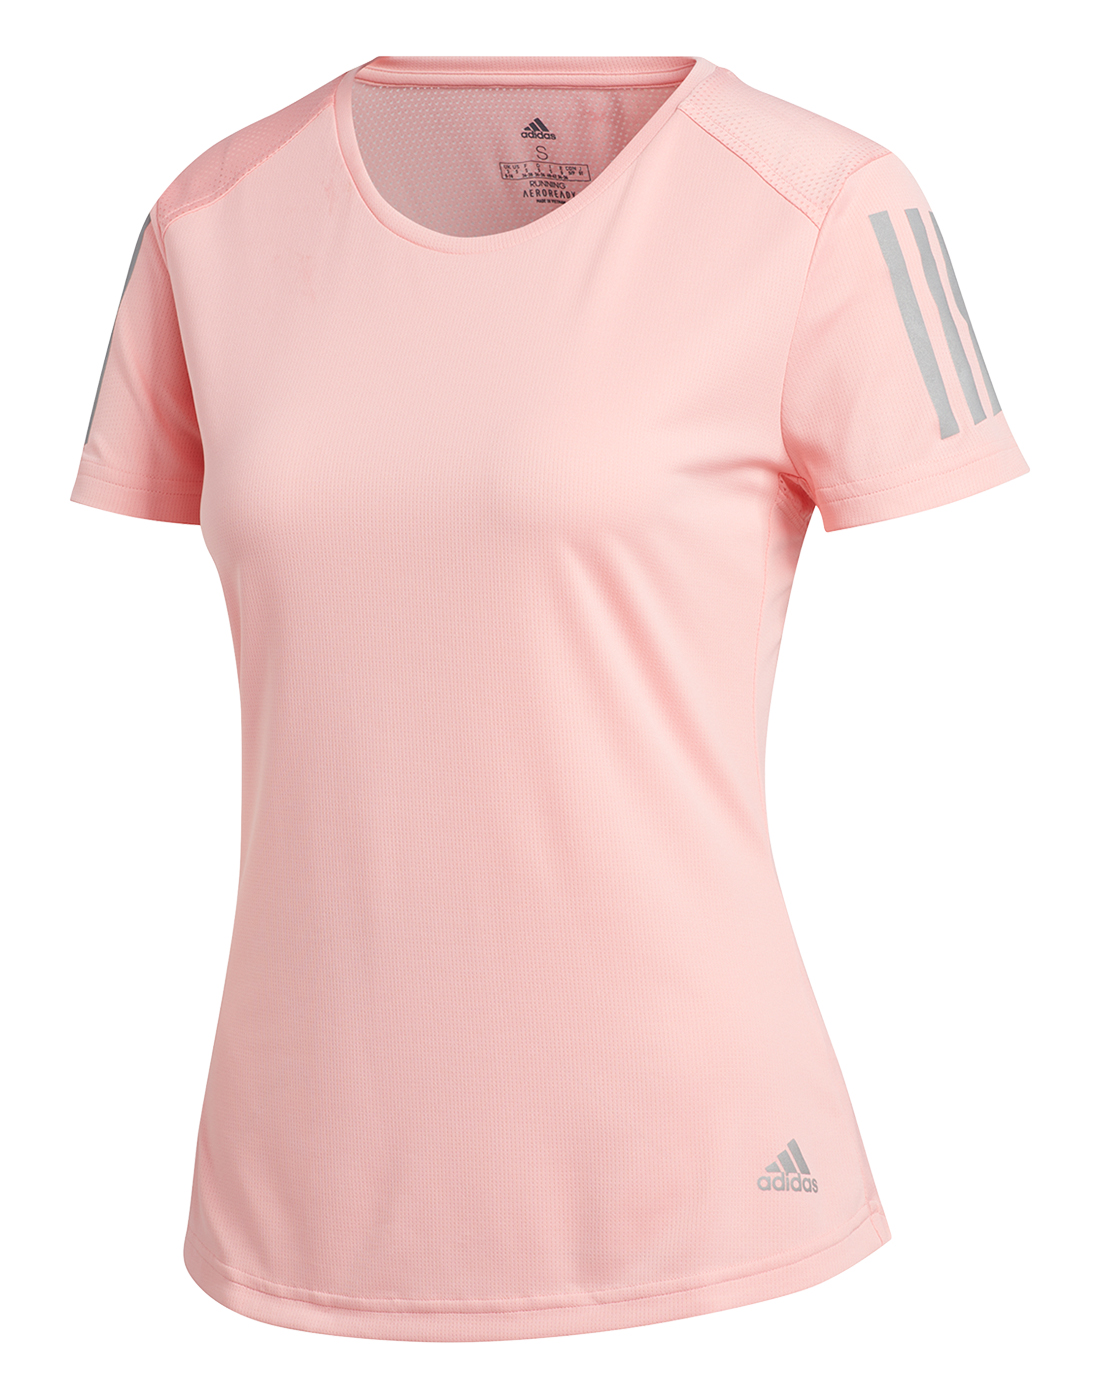 adidas Womens Run T-Shirt - Pink | Life Style Sports UK